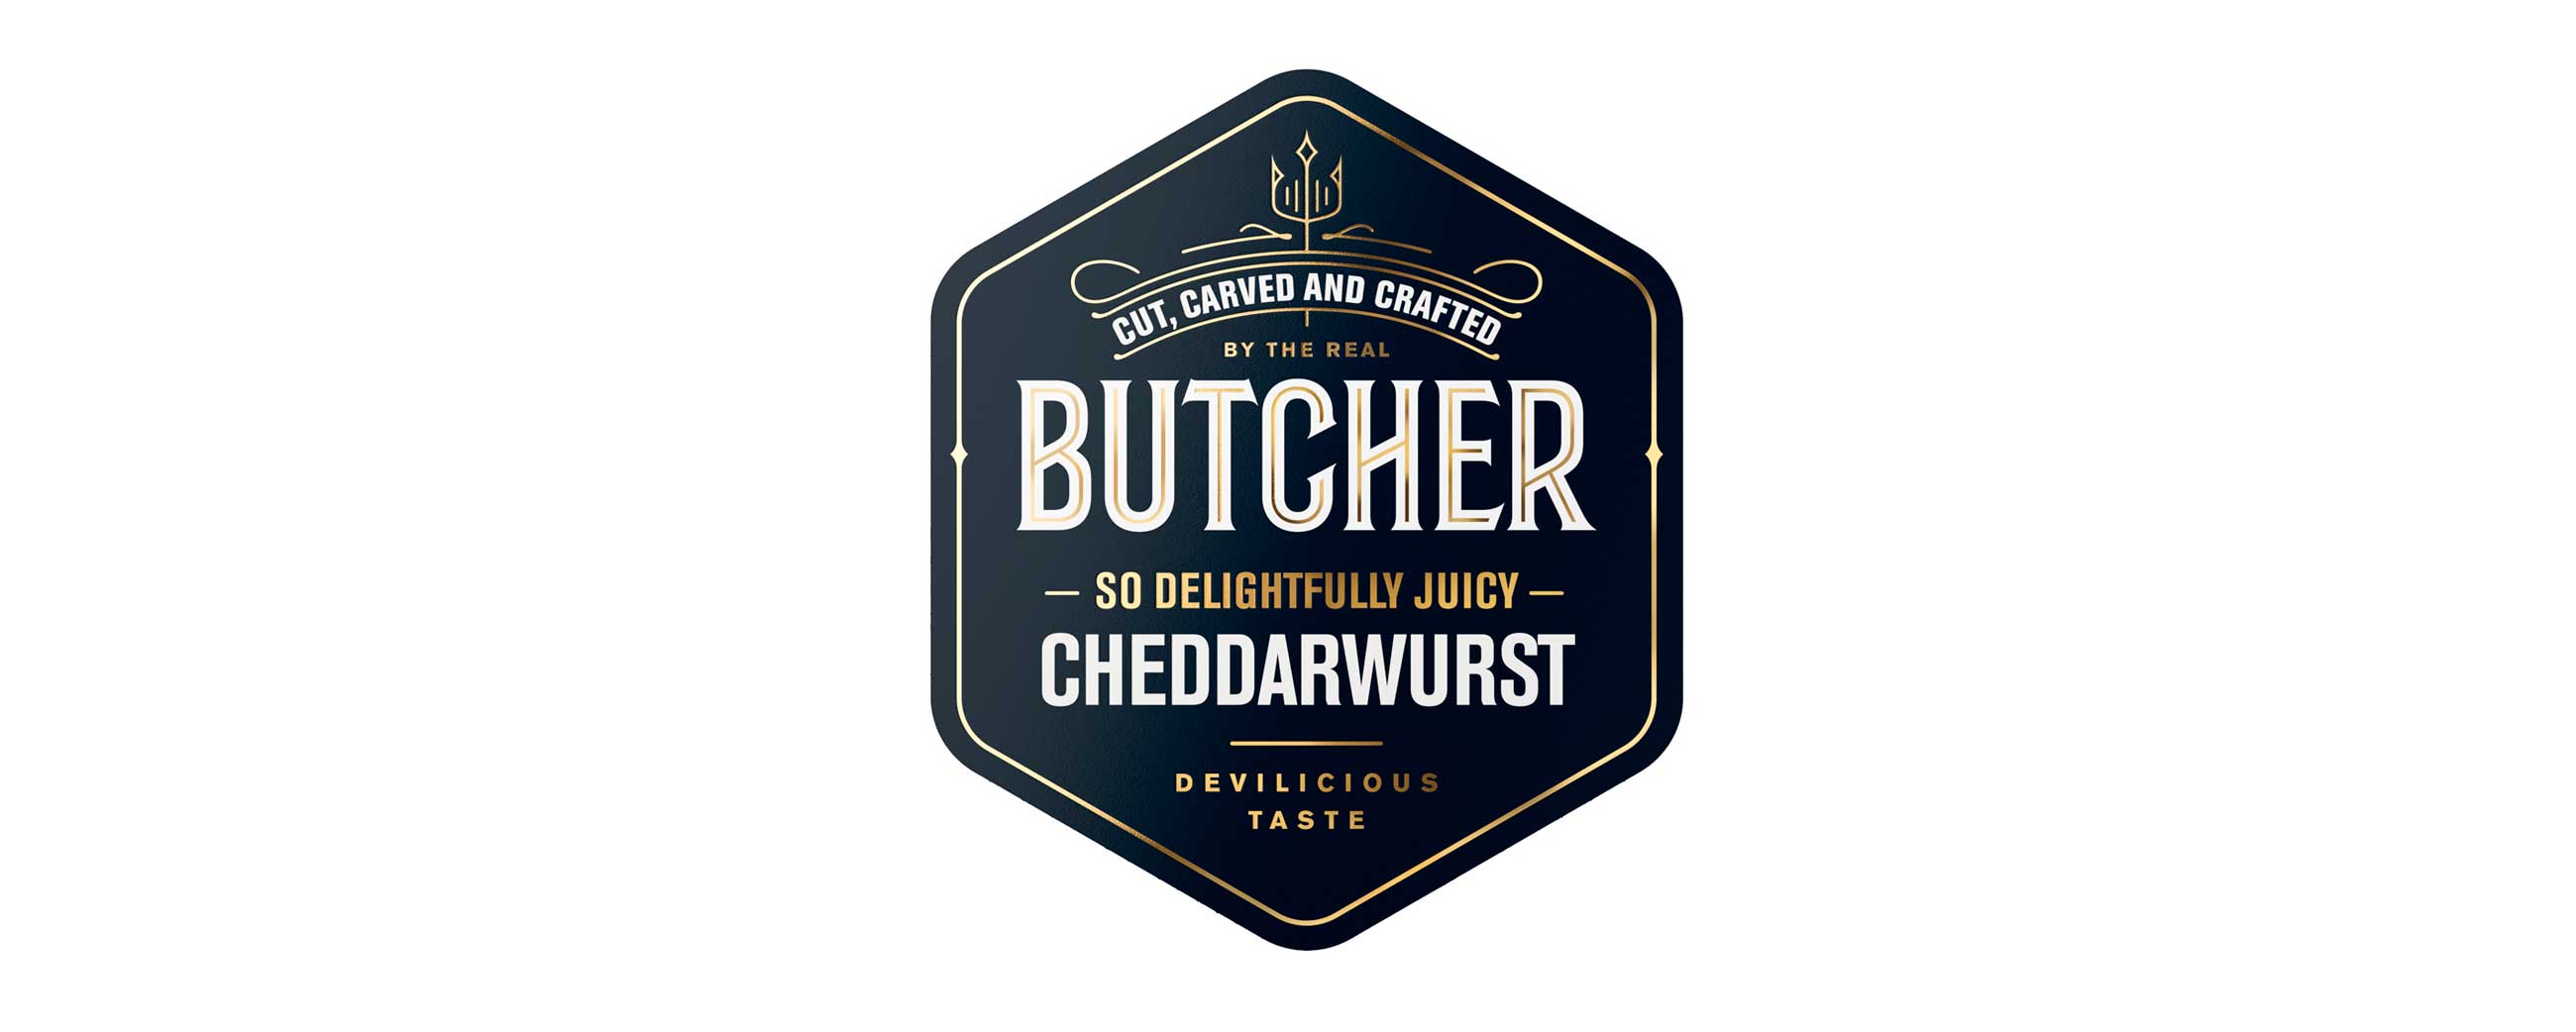 Grilstad Butcher Cheddarwurst logo. Visuell identitet visual identity.